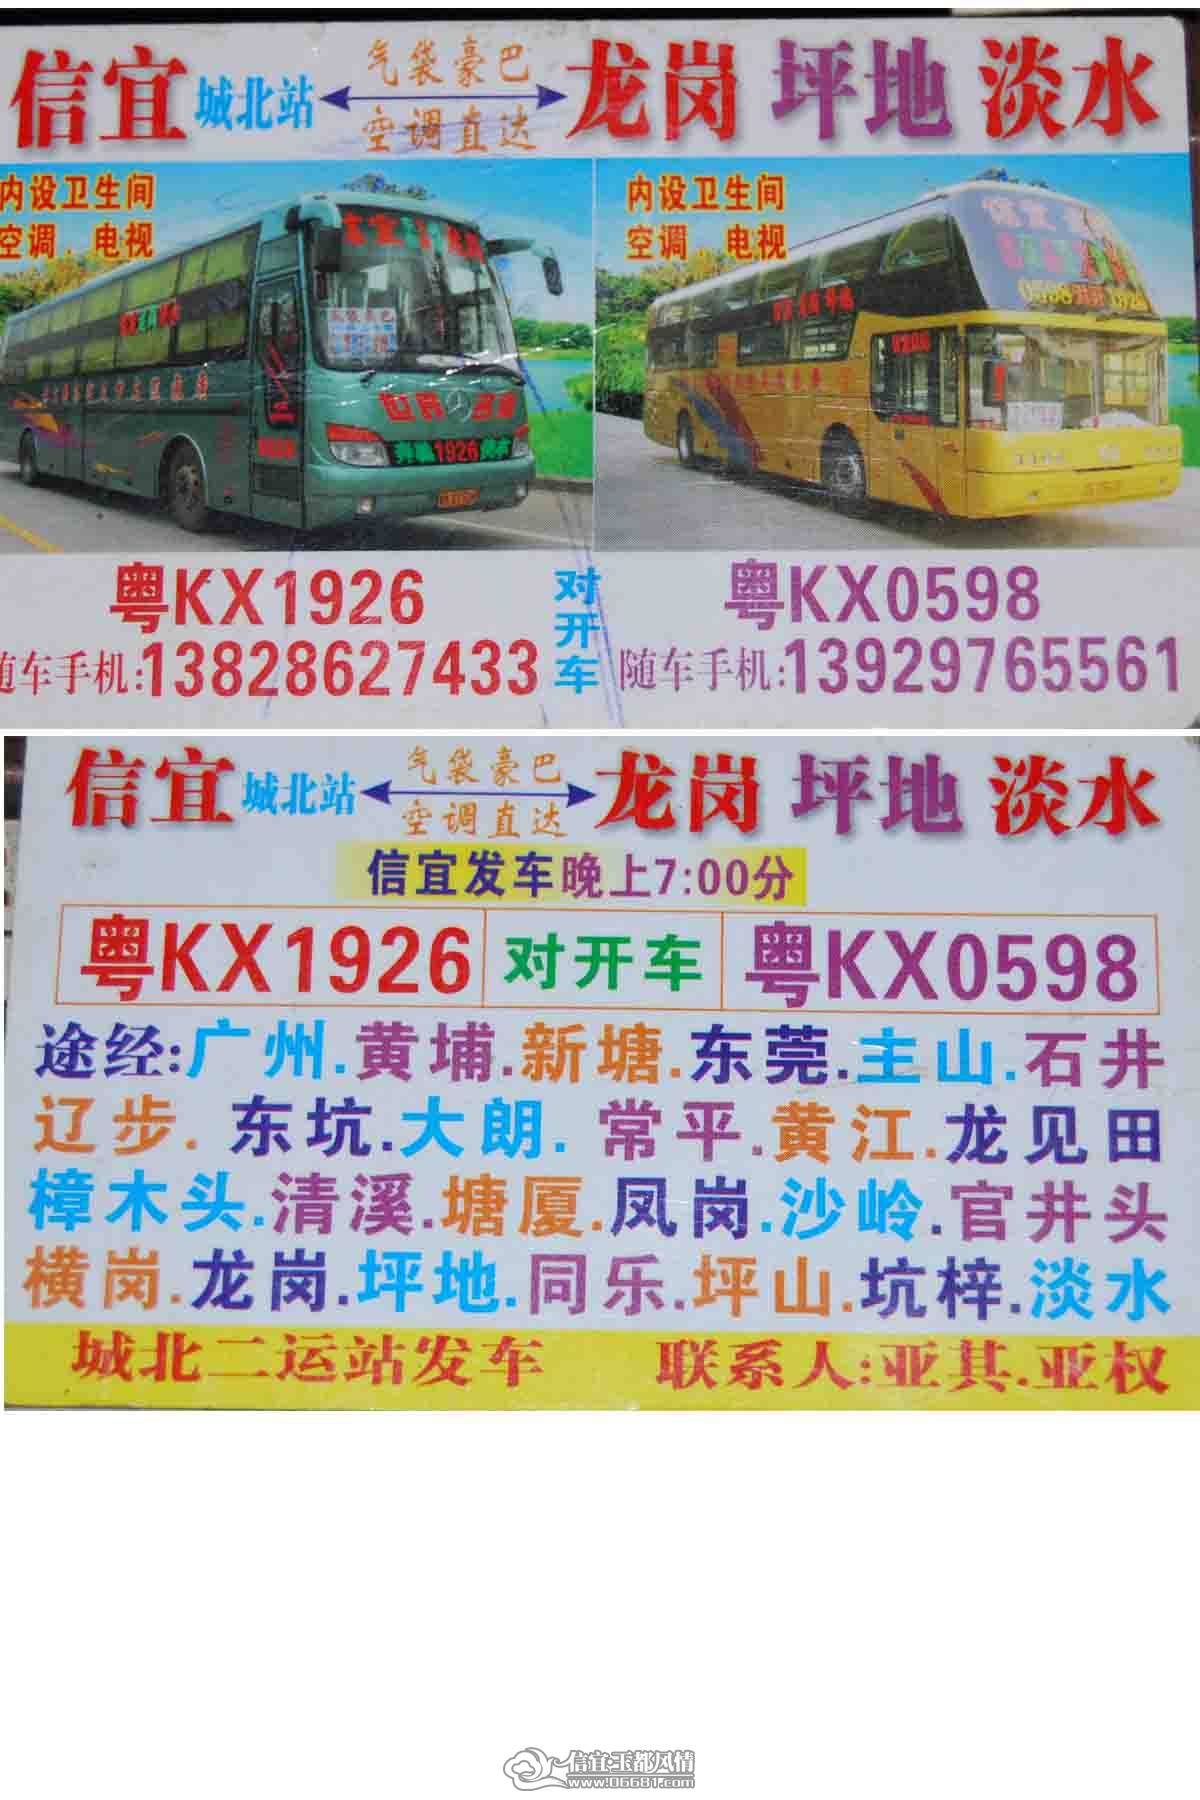 2010年往返信宜,东莞的客车车讯